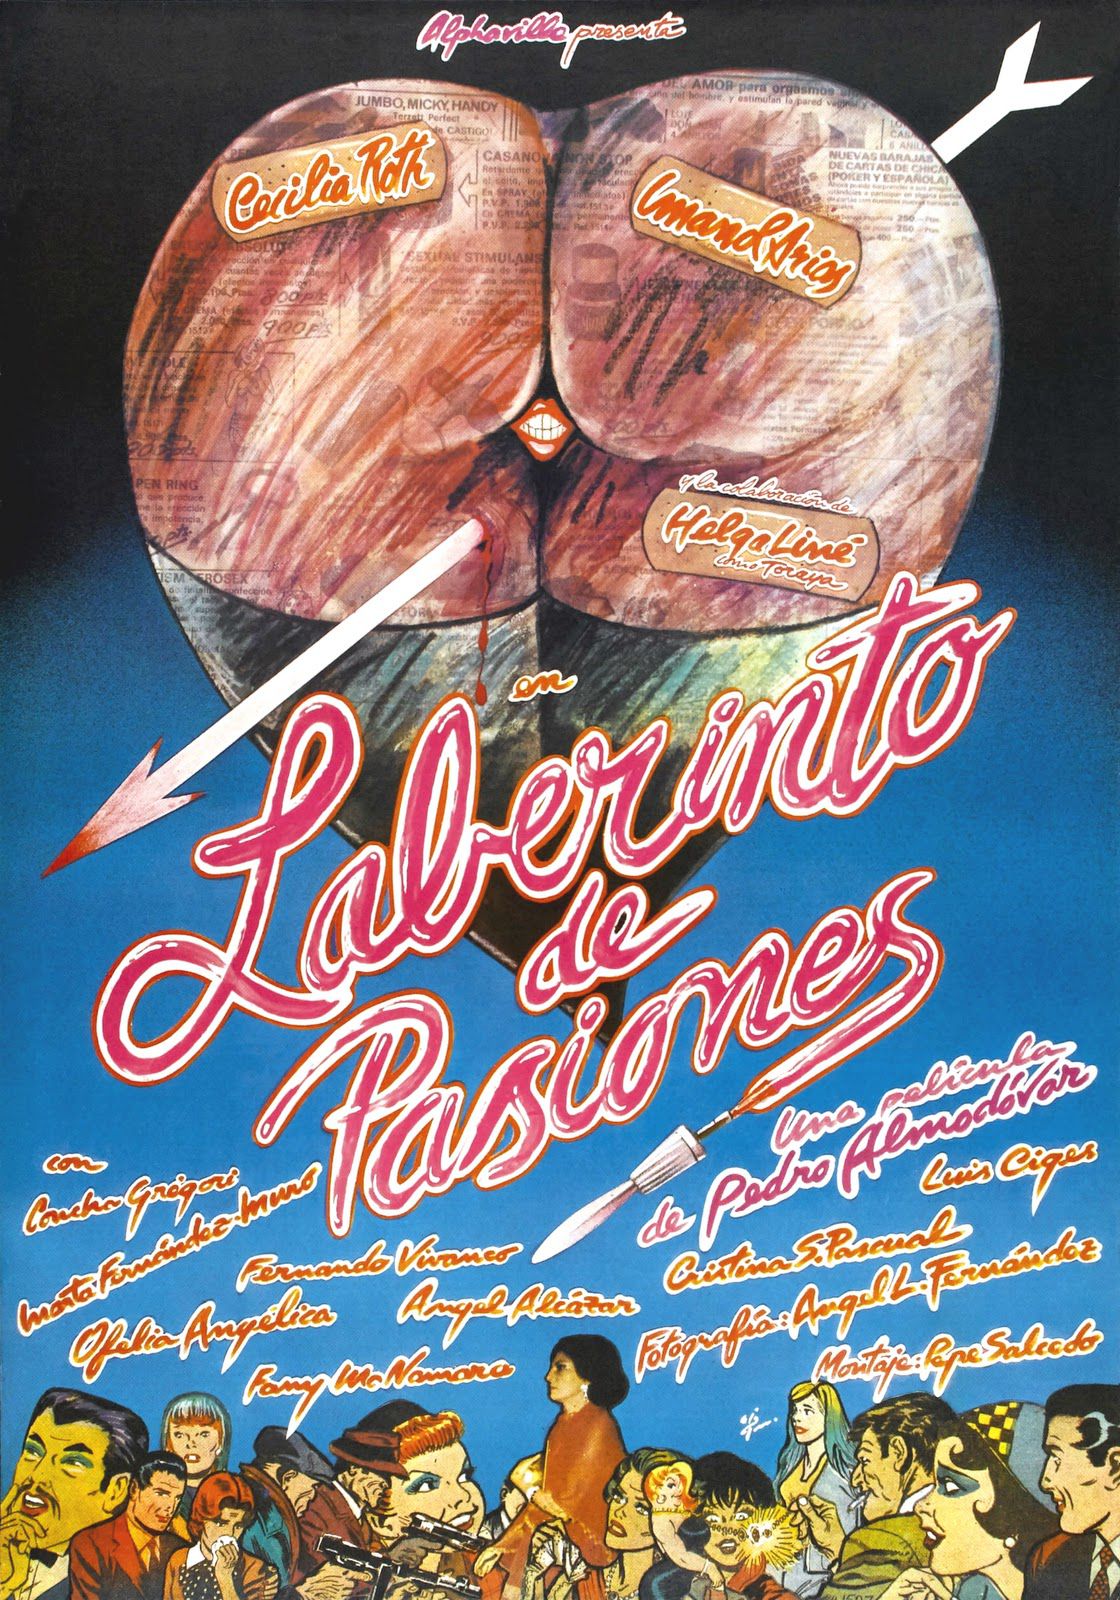 Cartaz de ‘Labirinto de paixões’, criado por Iván Zulueta em 1982.